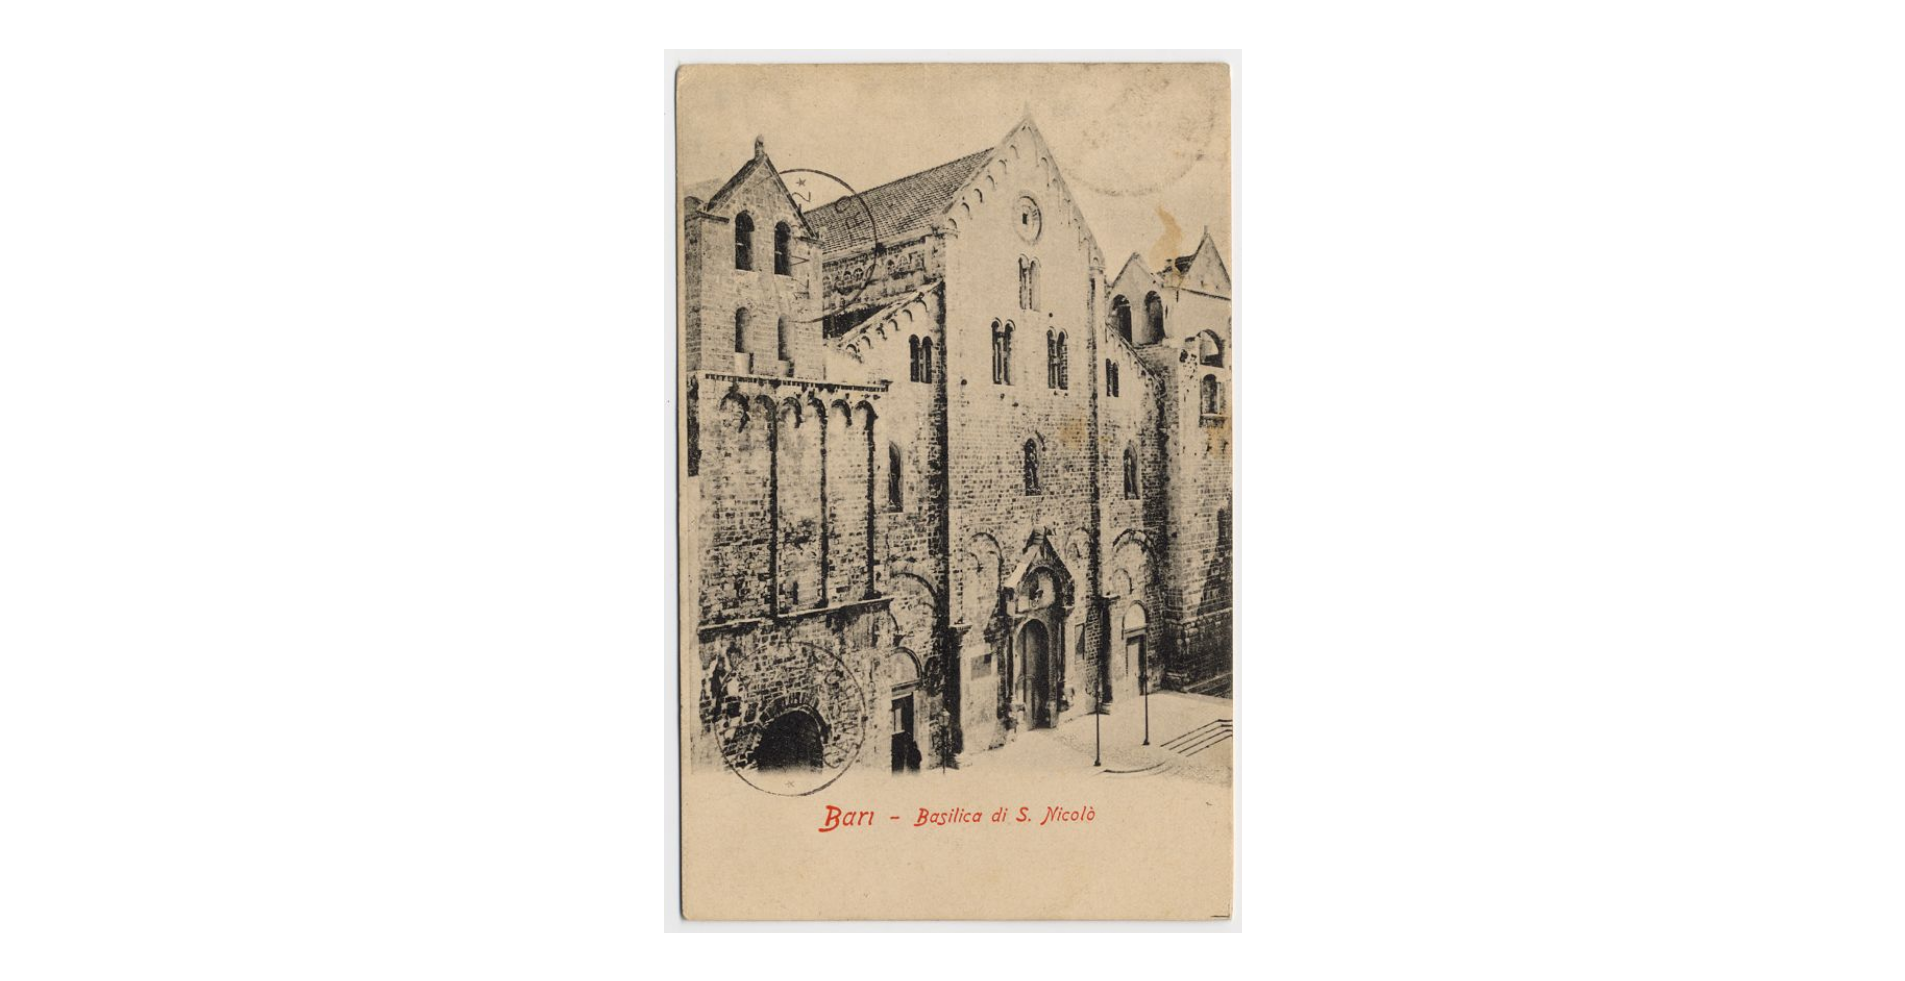 Fotografo non identificato, Bari - Basilica di S. Nicola di Bari, 1913, cartolina, FFC013992